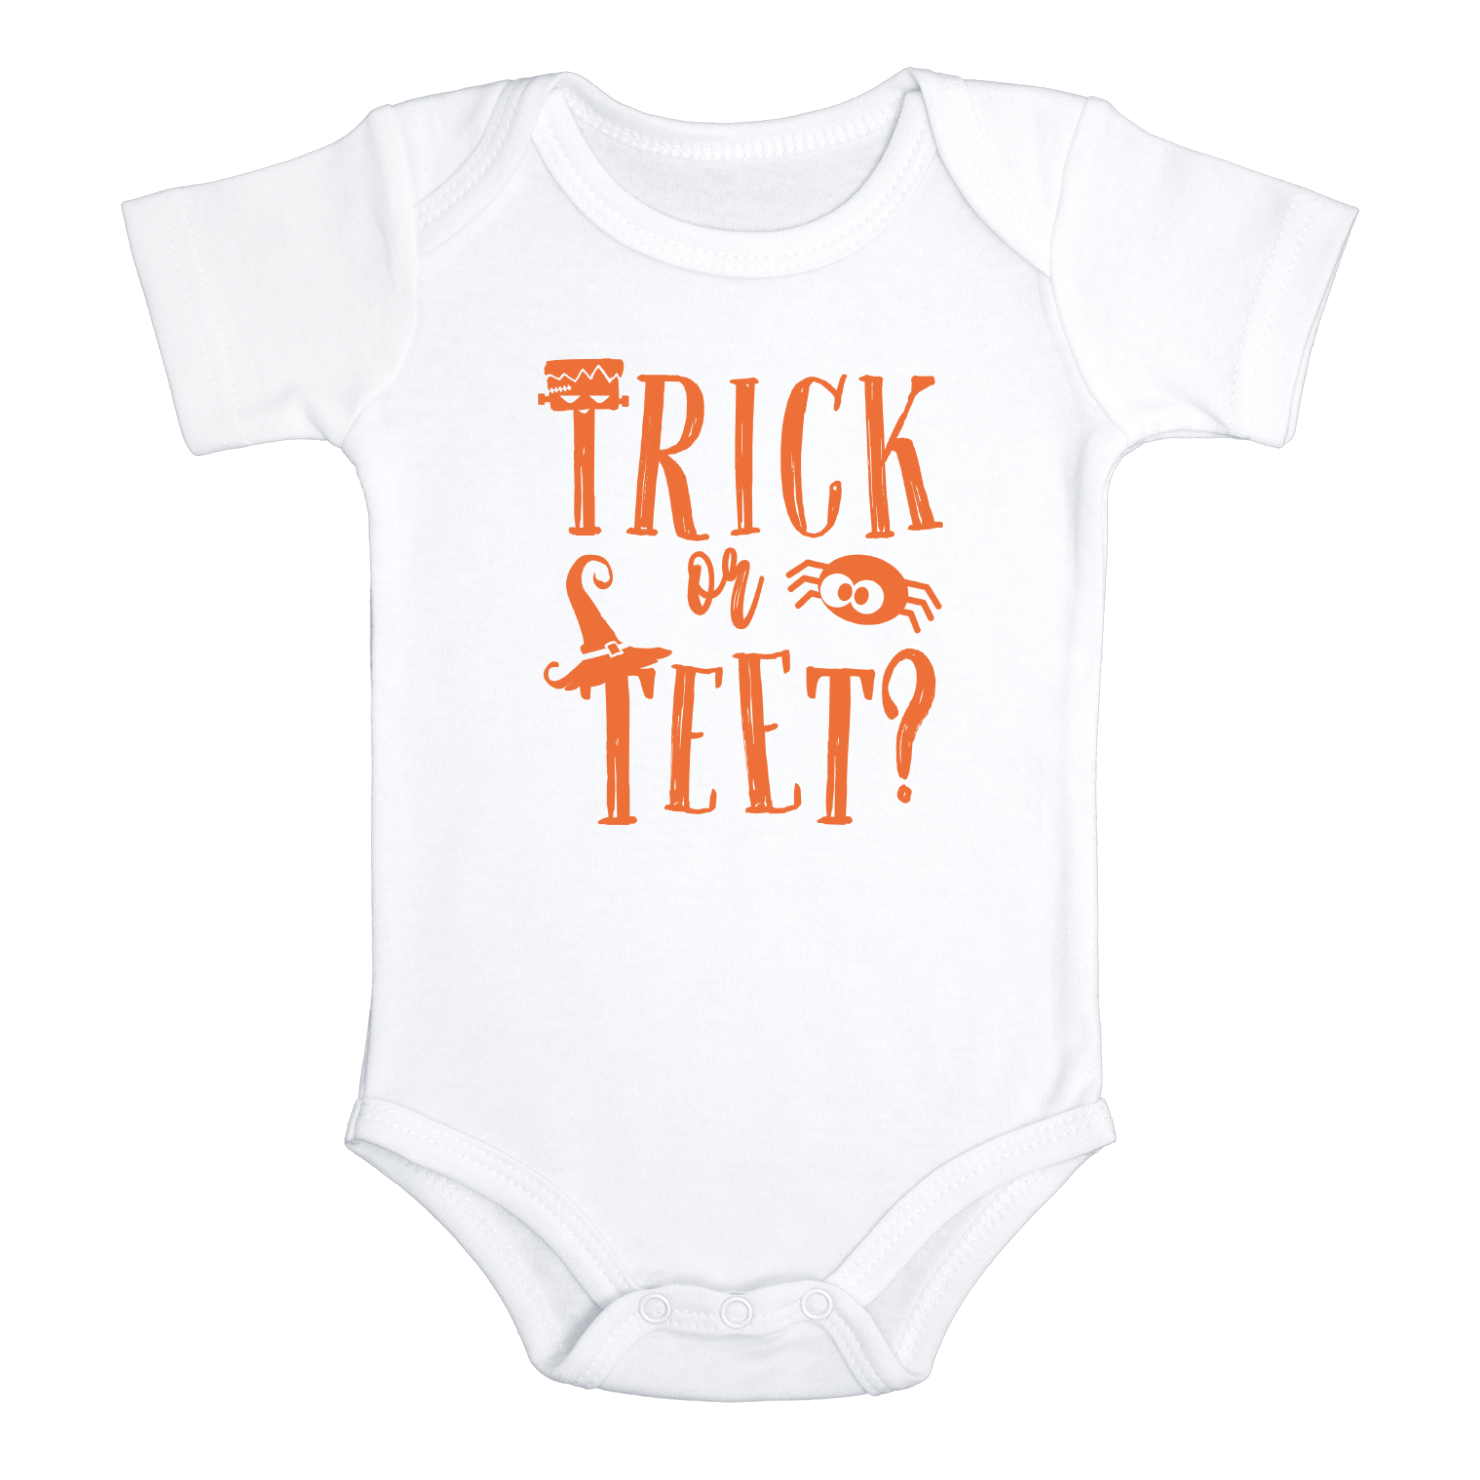 TRICK OR TEET Funny baby Halloween onesies bodysuit (white: short or long sleeve)